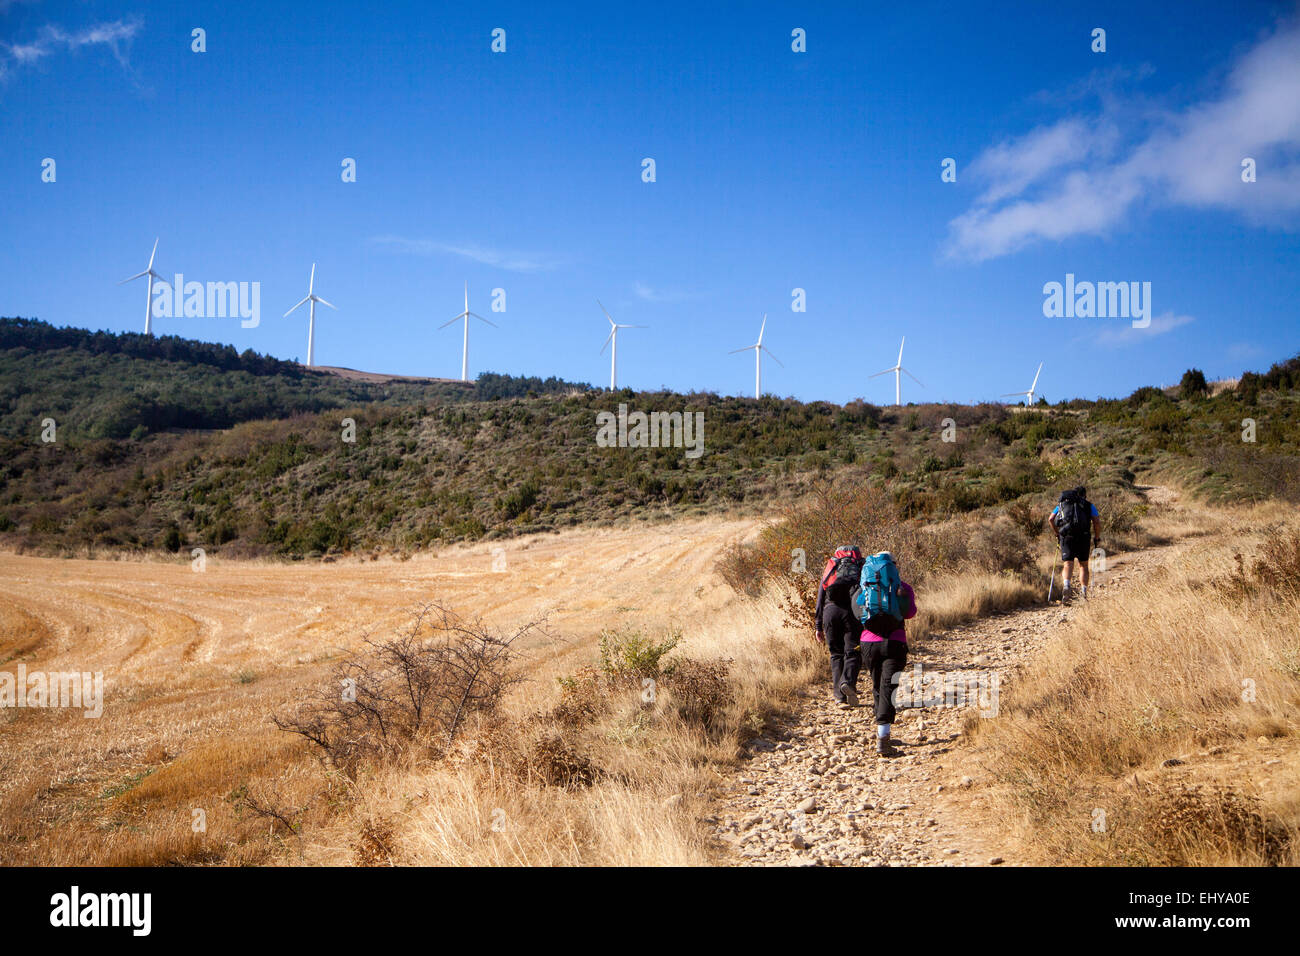 Pilgrims walking the Camino to Santiago de Compostela route near Zariquiegui Spain, a steep climb towards the Alto de Perdon. Stock Photo